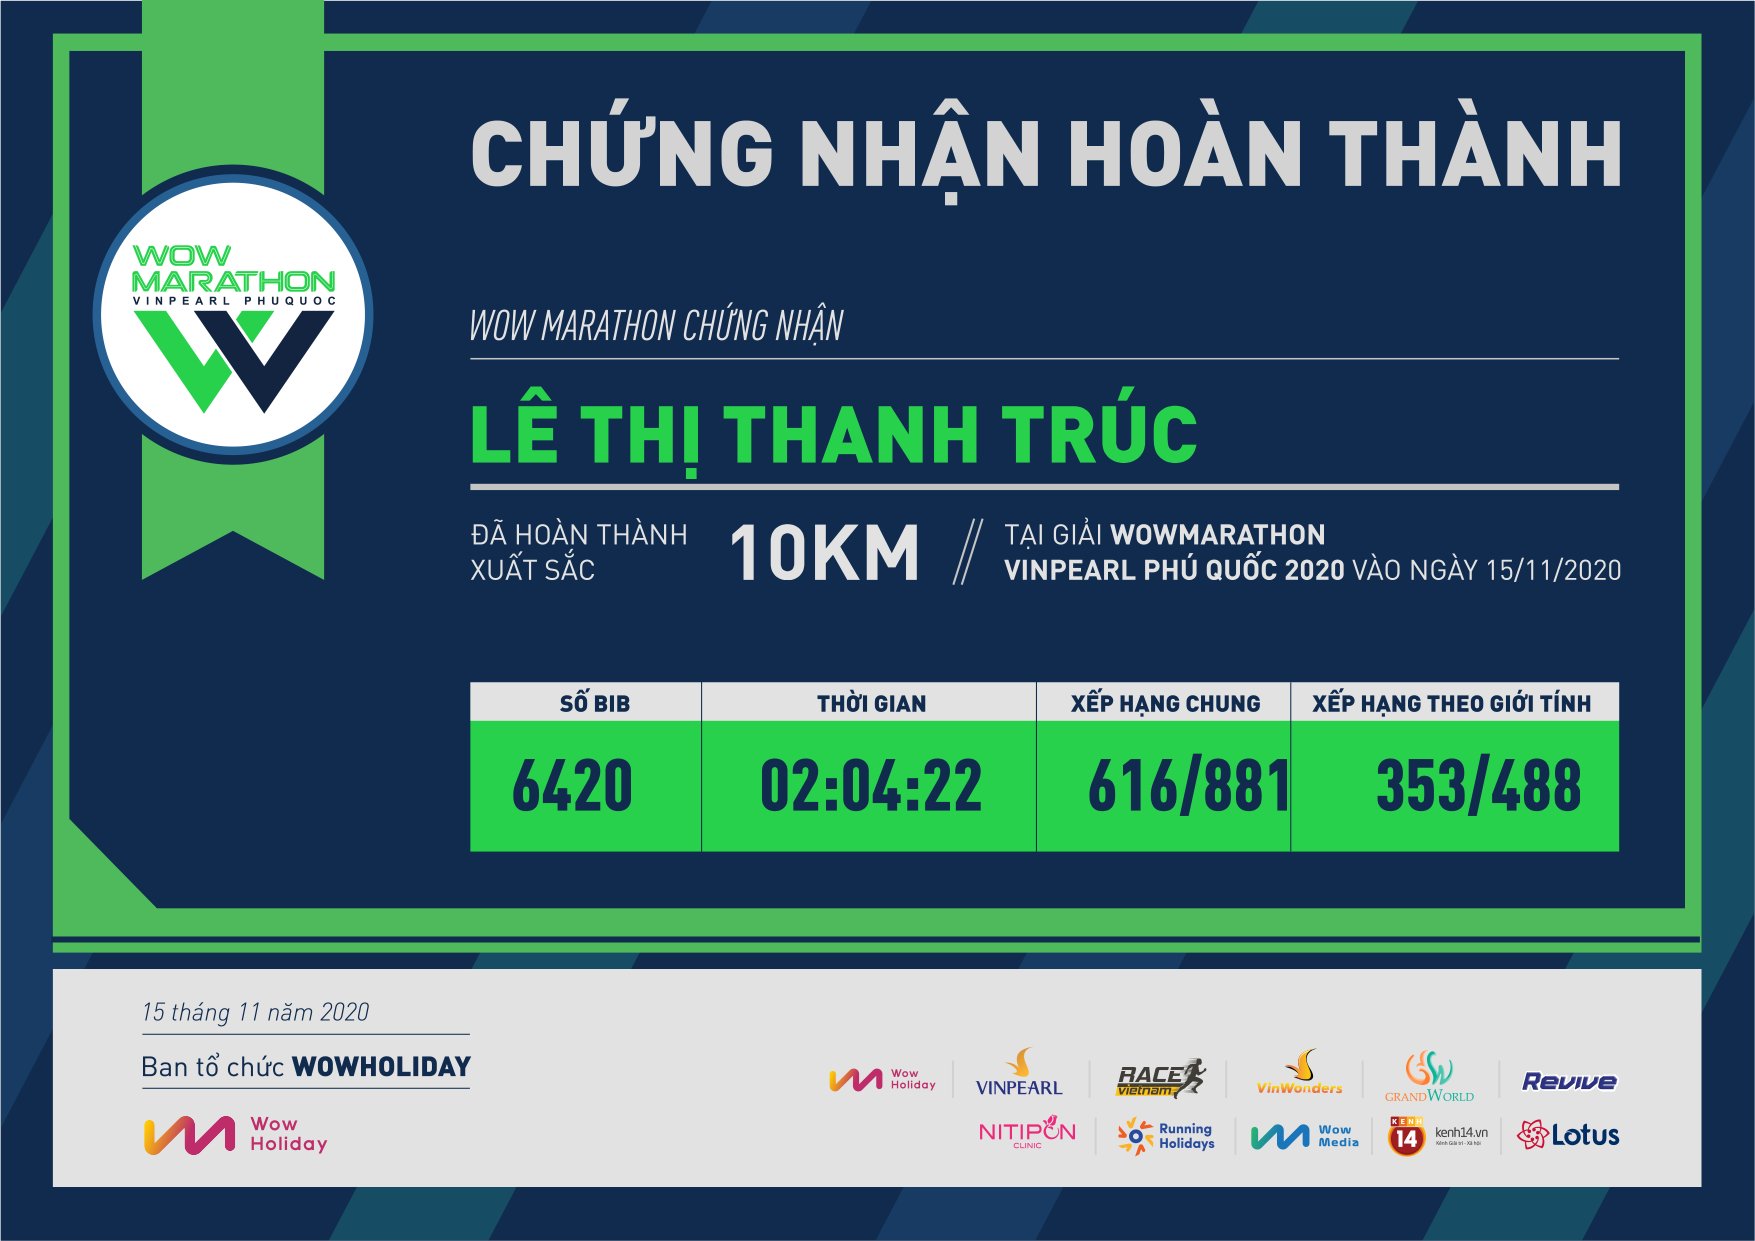 6420 - Lê Thị Thanh Trúc